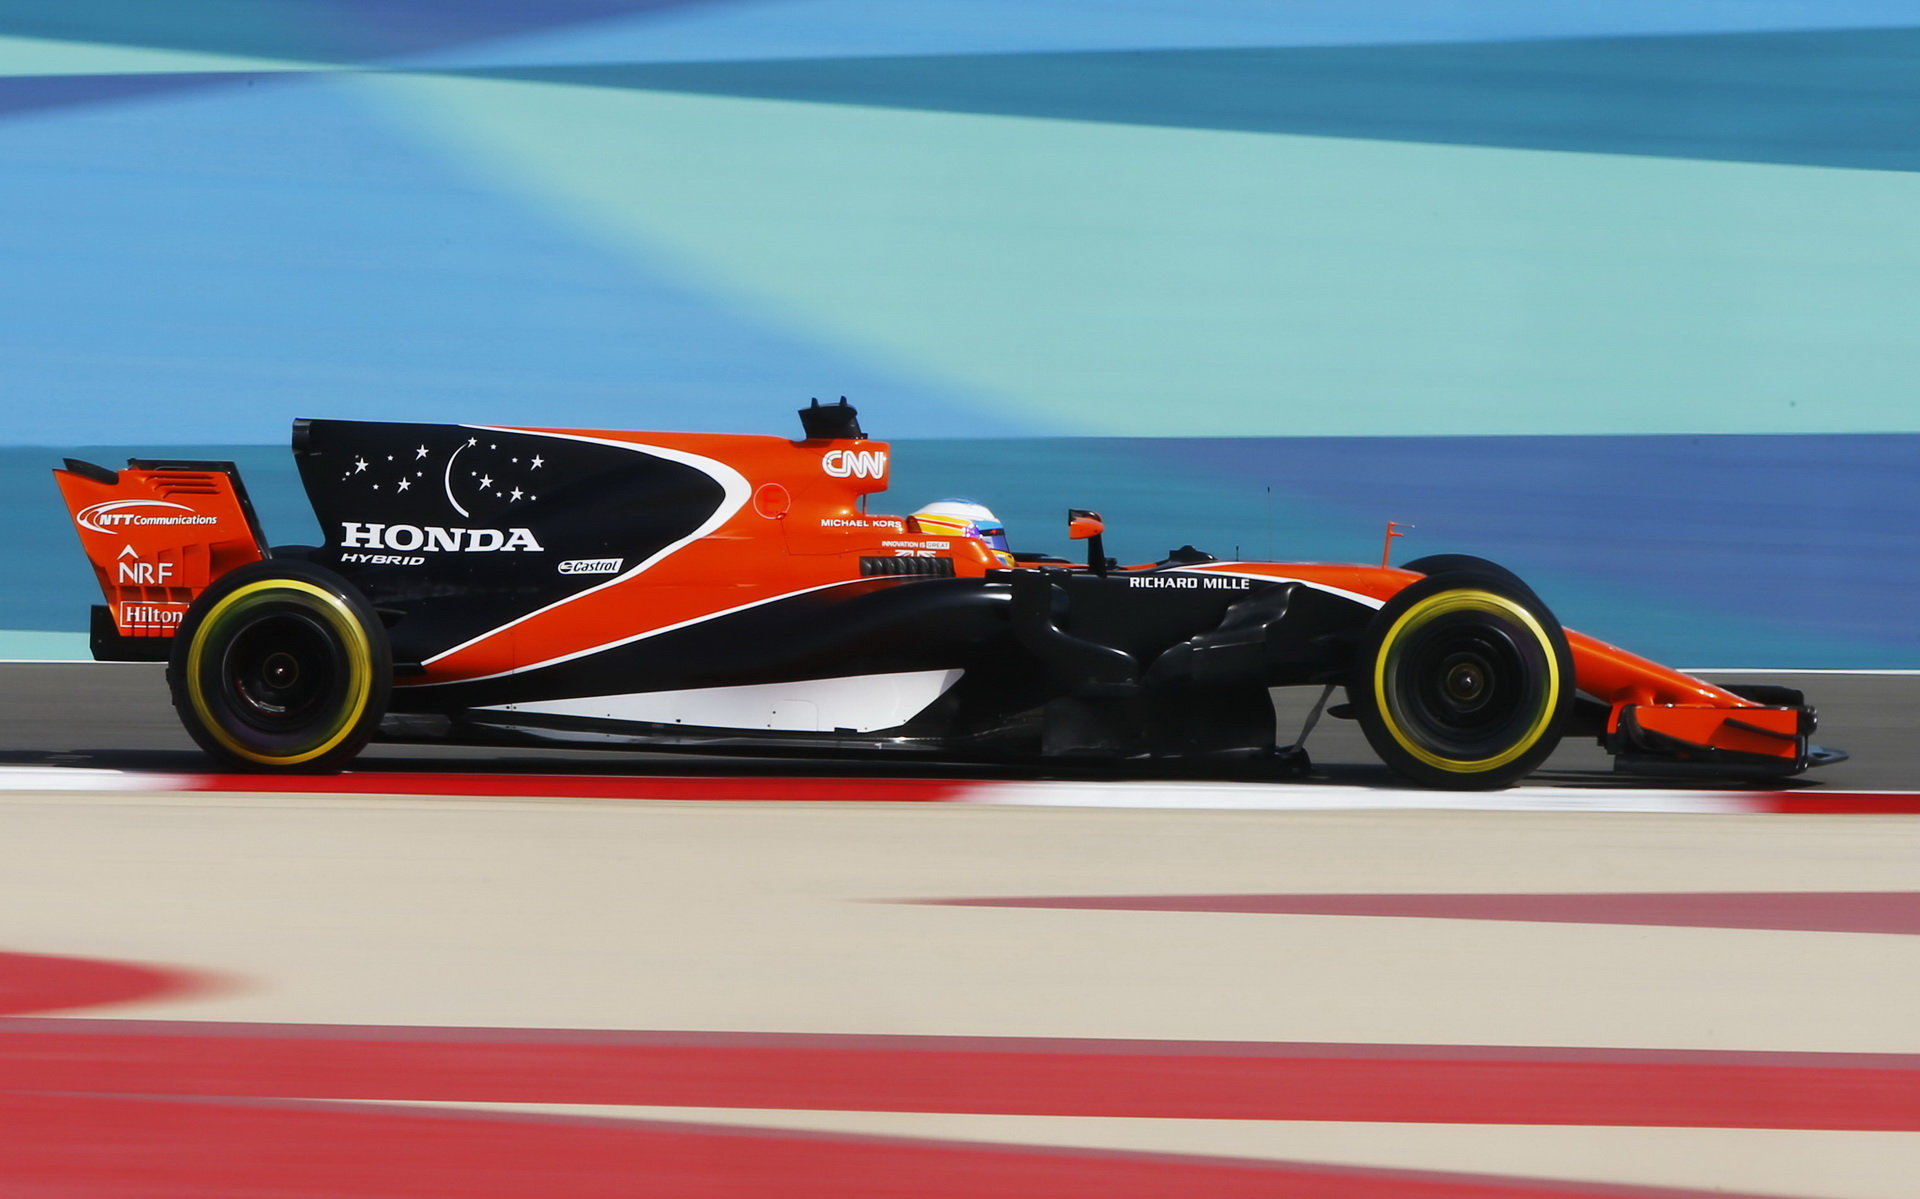 McLaren v Bahrajnu řeší problémy s MGU-H